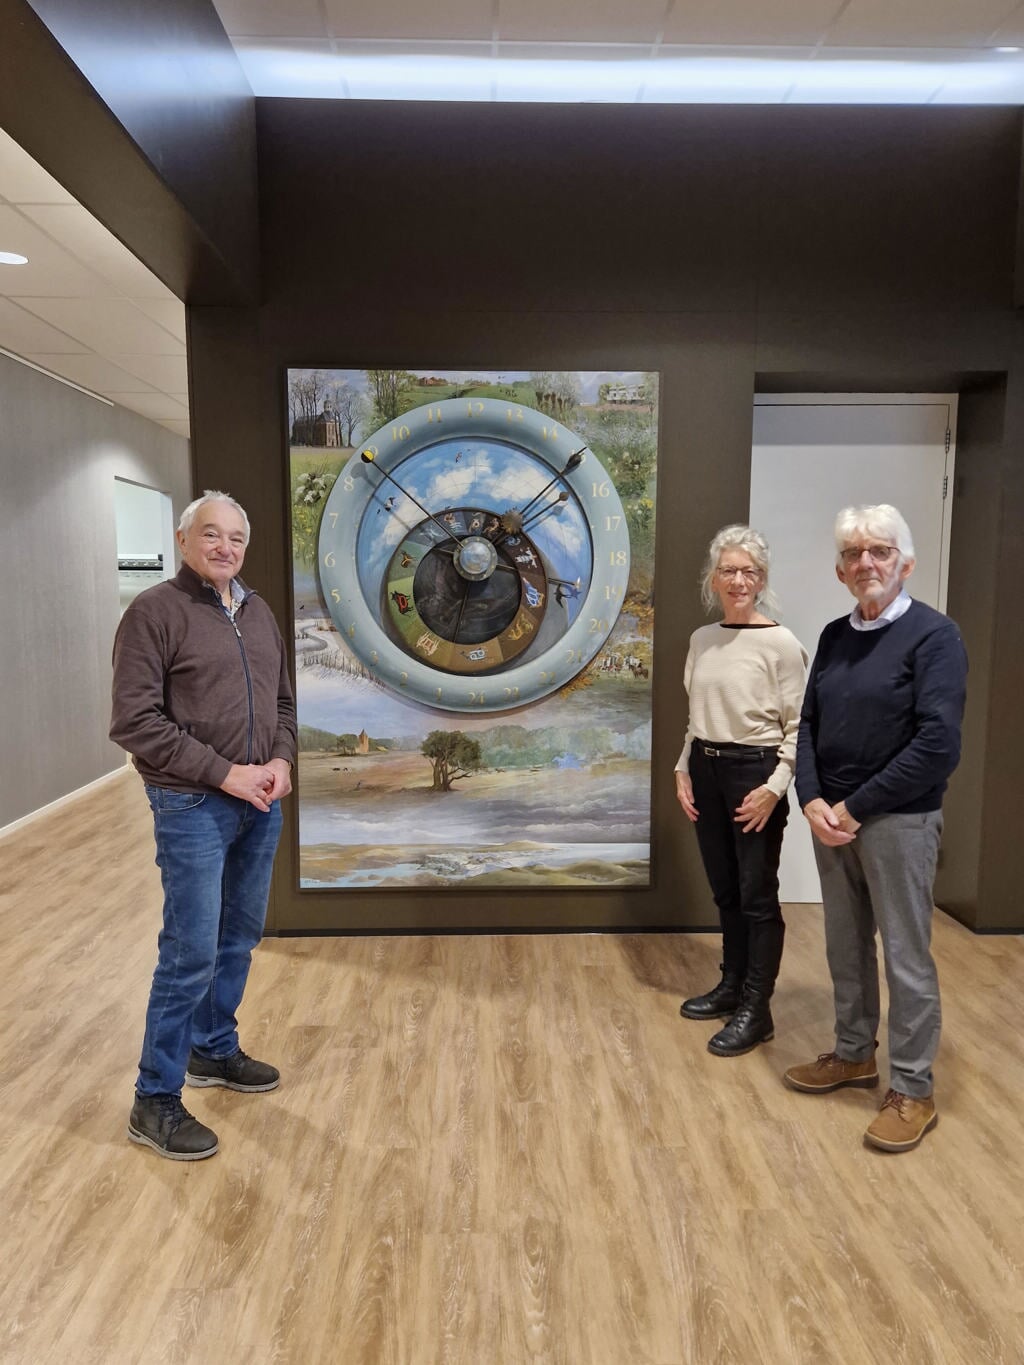 V.l.n.r. Ronald Polak (Historische Kring Leusden), Rens Fioole en Hans van der Valk bij het in ere herstelde astronomisch uurwerk.